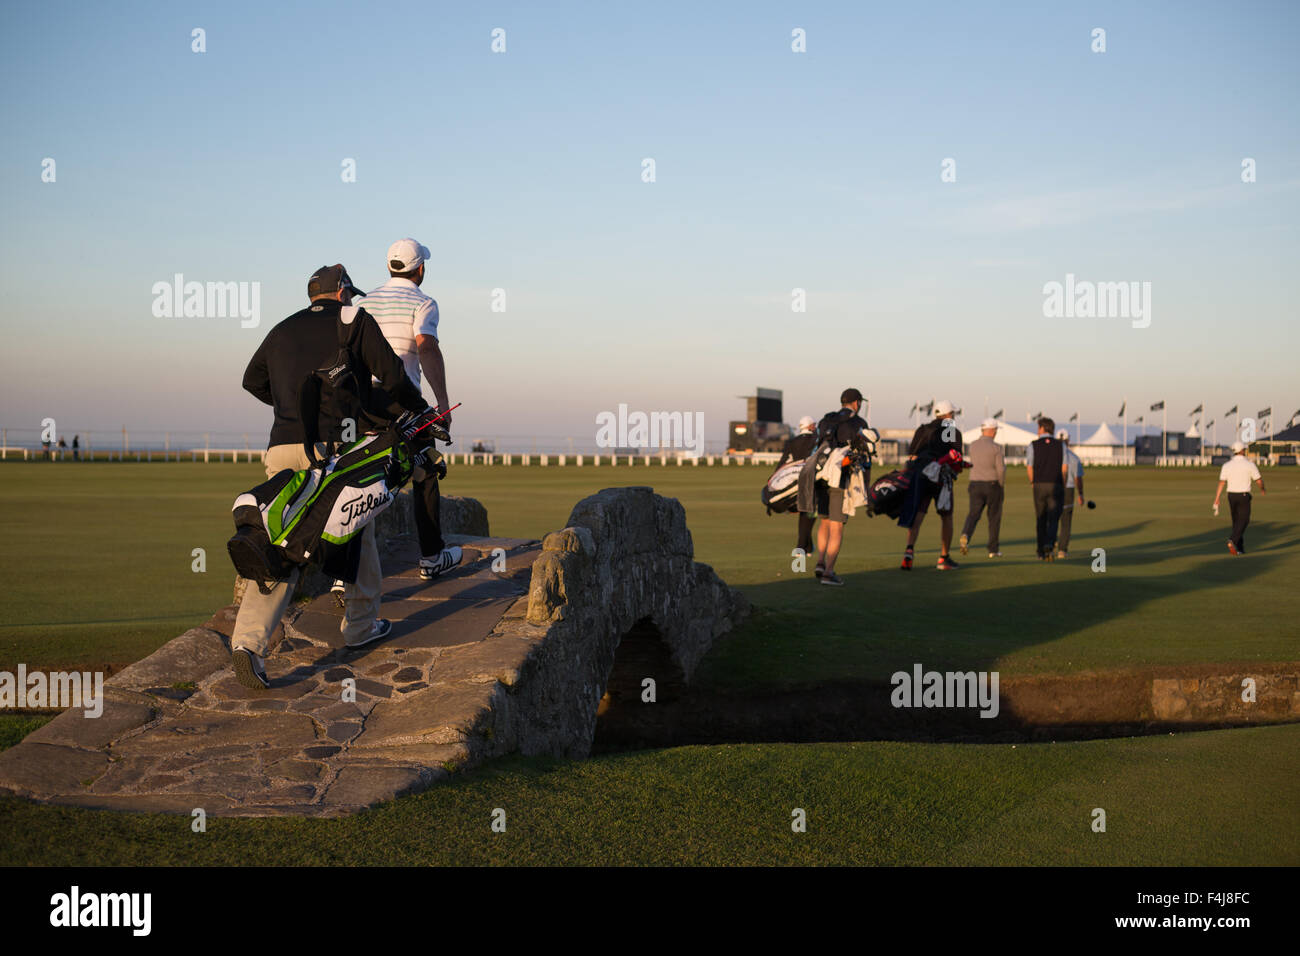 Les golfeurs du monde entier célèbre Aplenty Poivron (brûler) Pont sur le St Andrews Links Golf Old Course, Saint Andrews, Écosse, Royaume-Uni. Banque D'Images